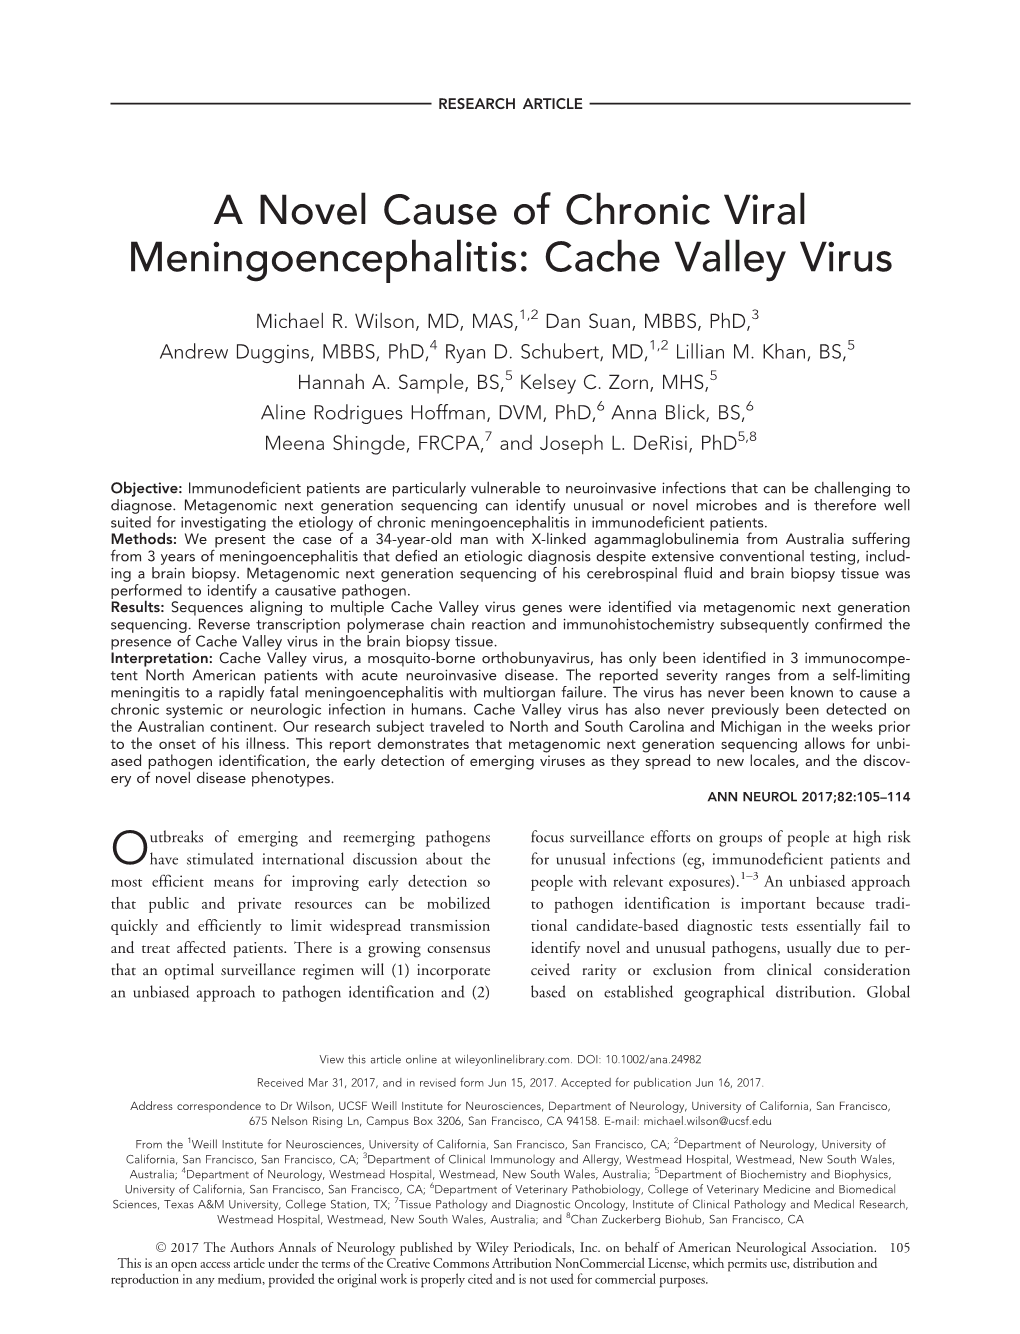 A Novel Cause of Chronic Viral Meningoencephalitis: Cache Valley Virus